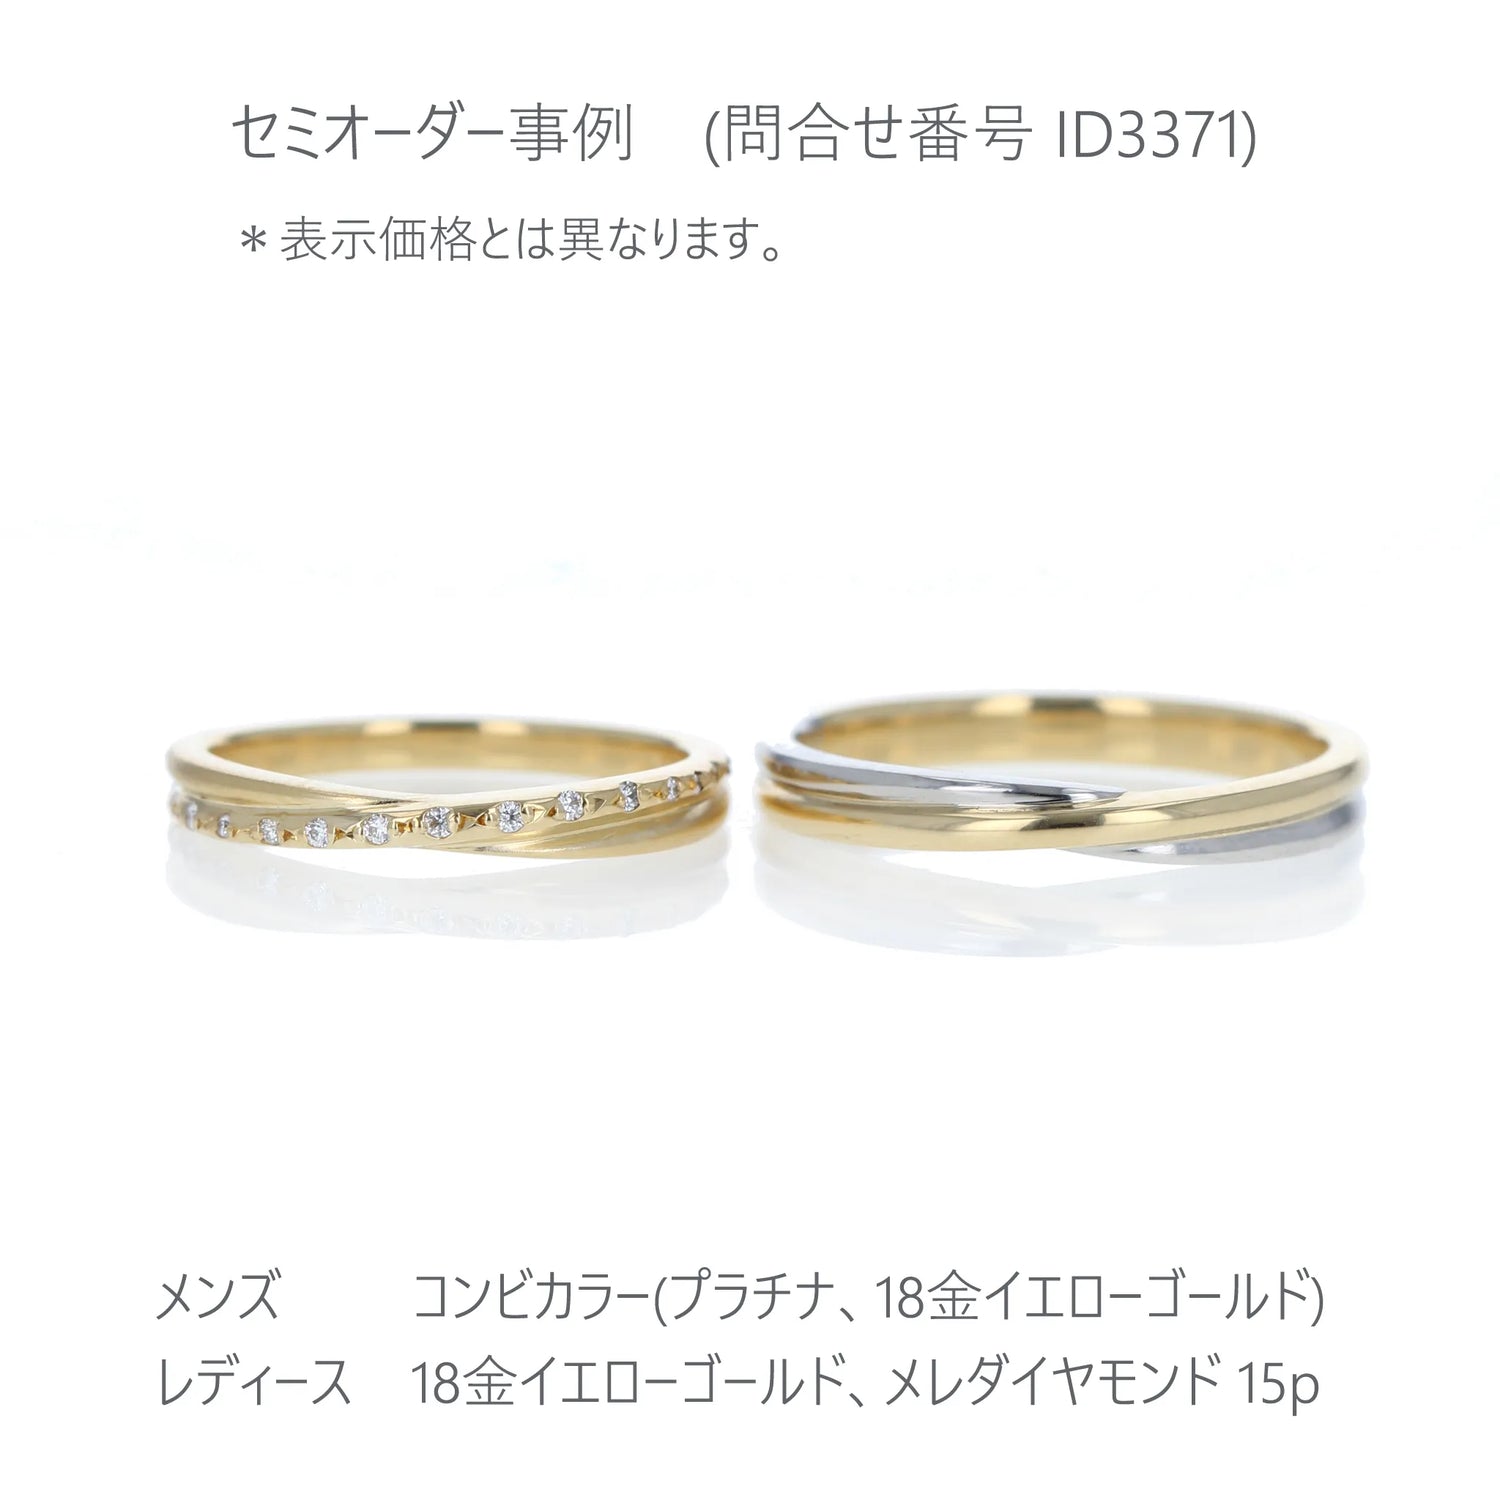 Crossing 光沢とつや消しで表現した結婚指輪 18金メレダイヤを入れて